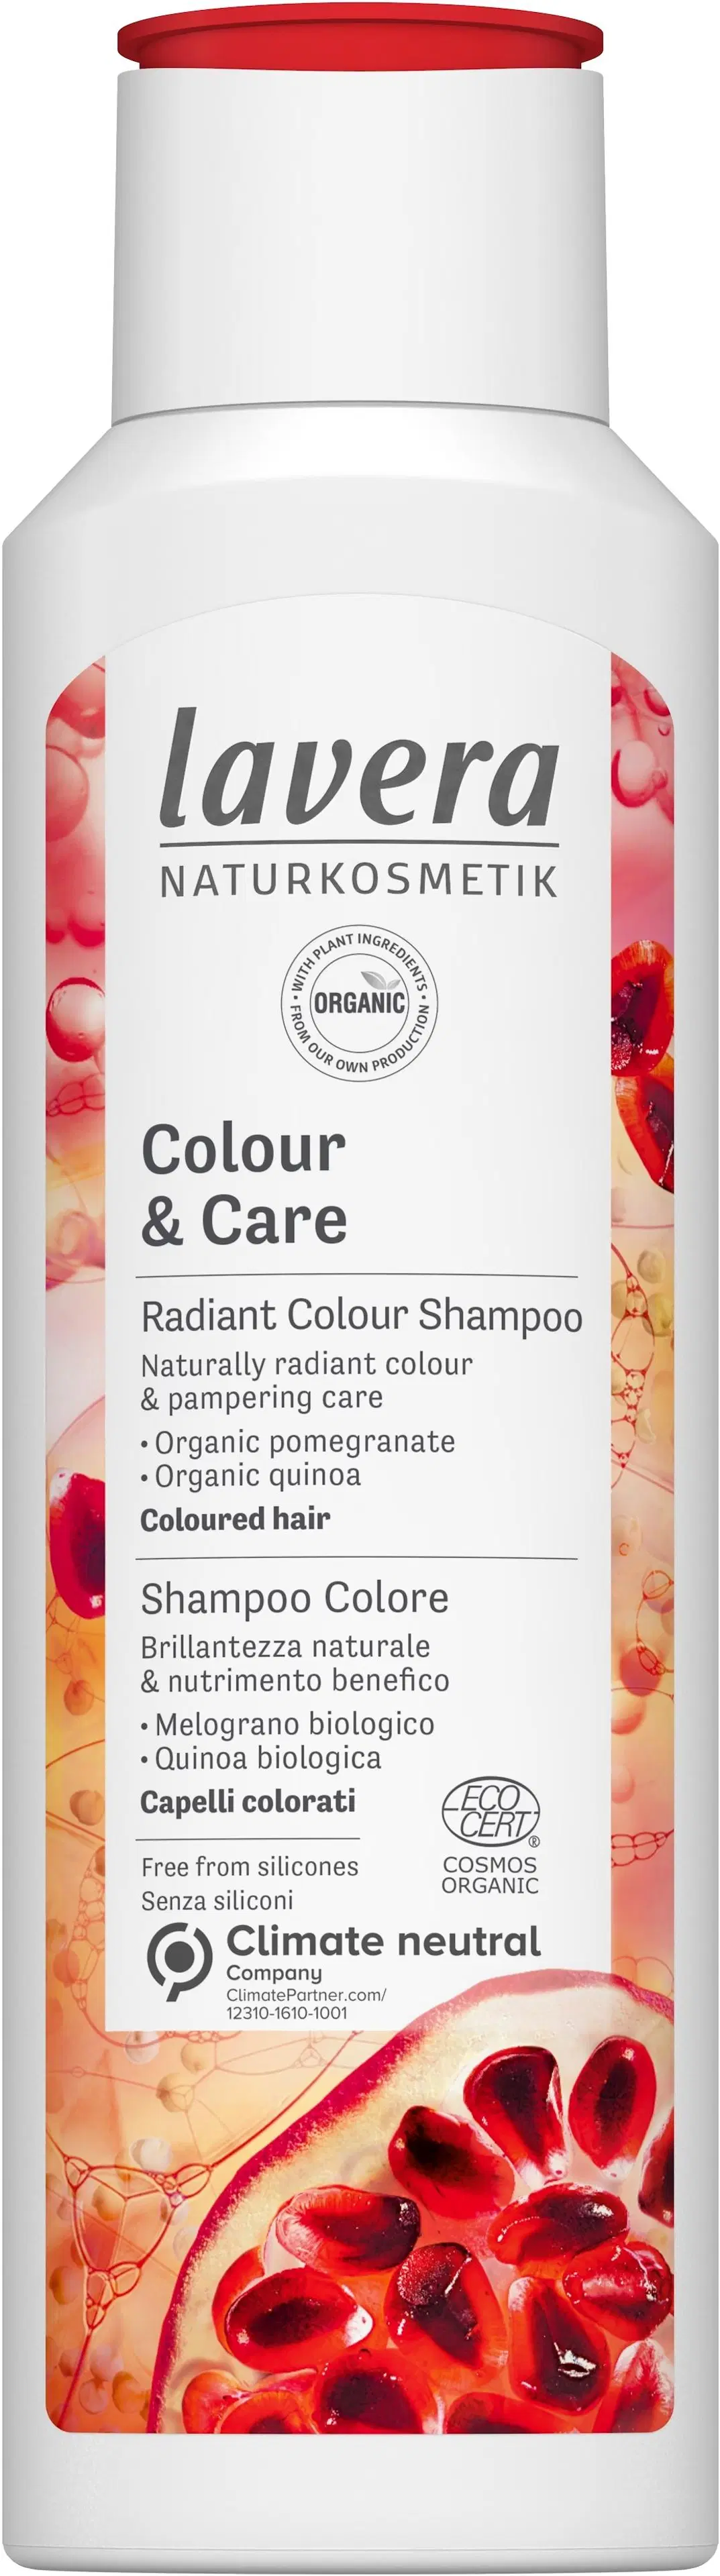 lavera Colour & Care Shampoo 250 Ml